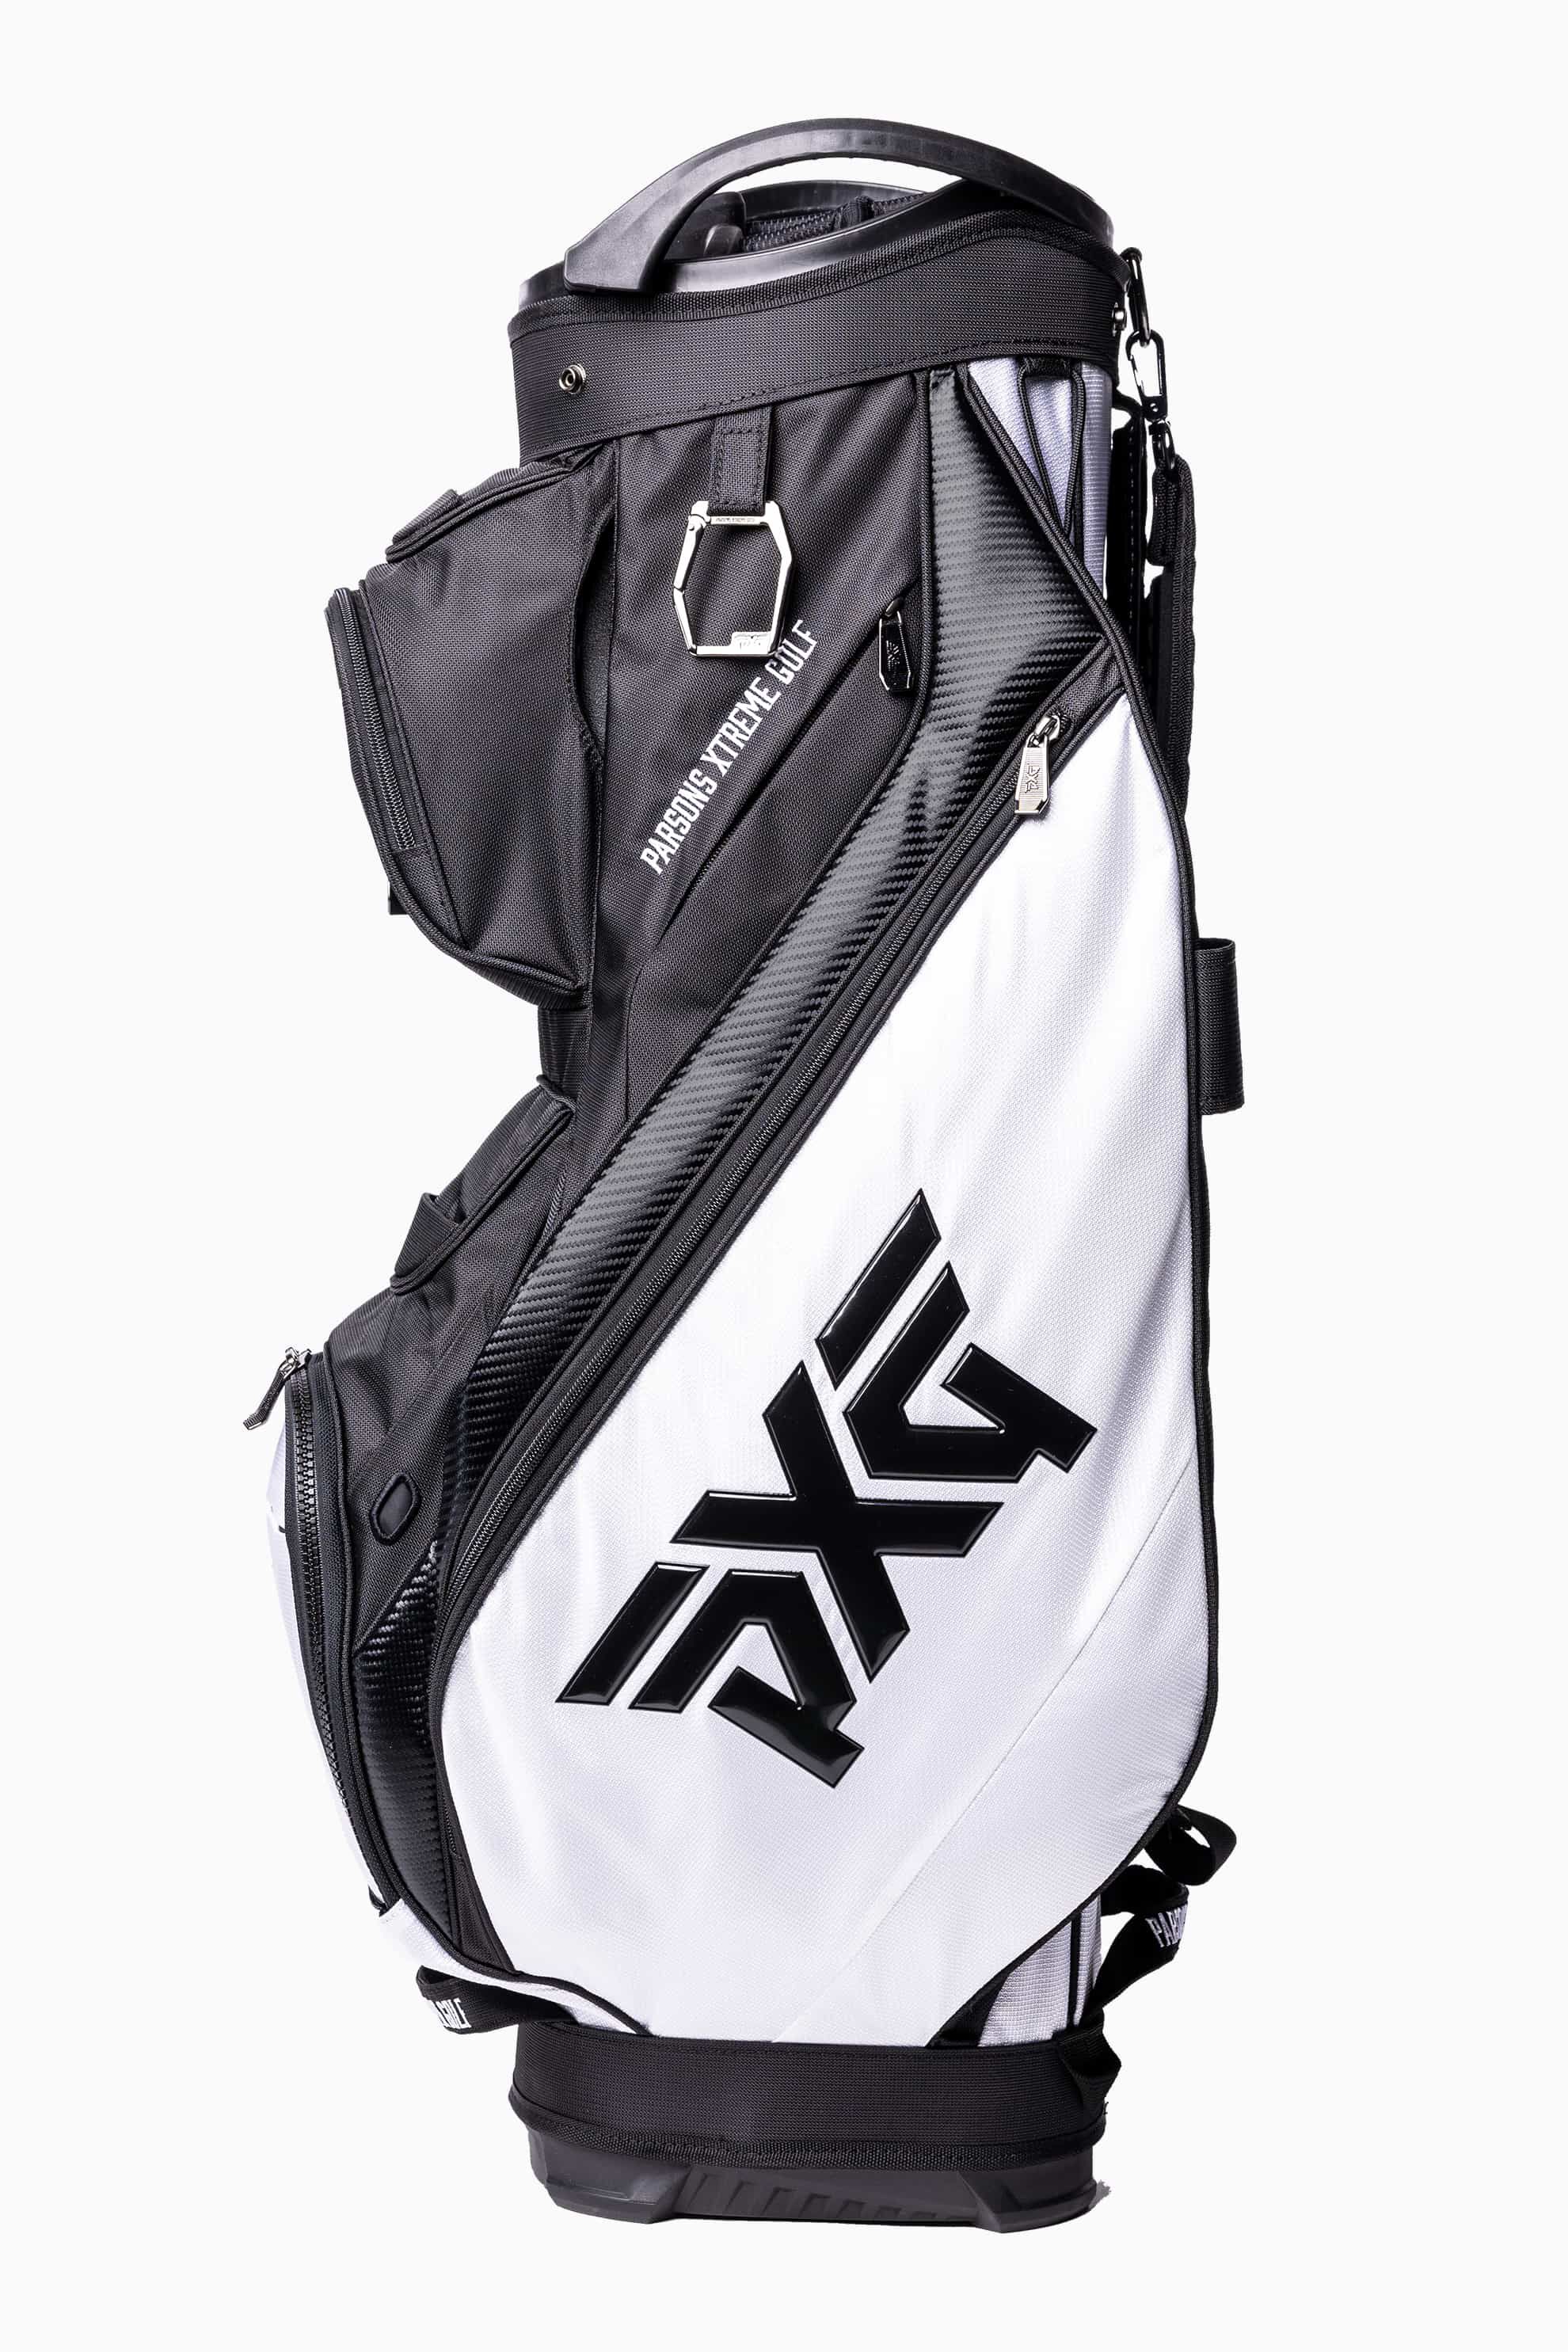 The Best Golf Bags For Women  Golf Equipment Clubs Balls Bags  Golf  Digest